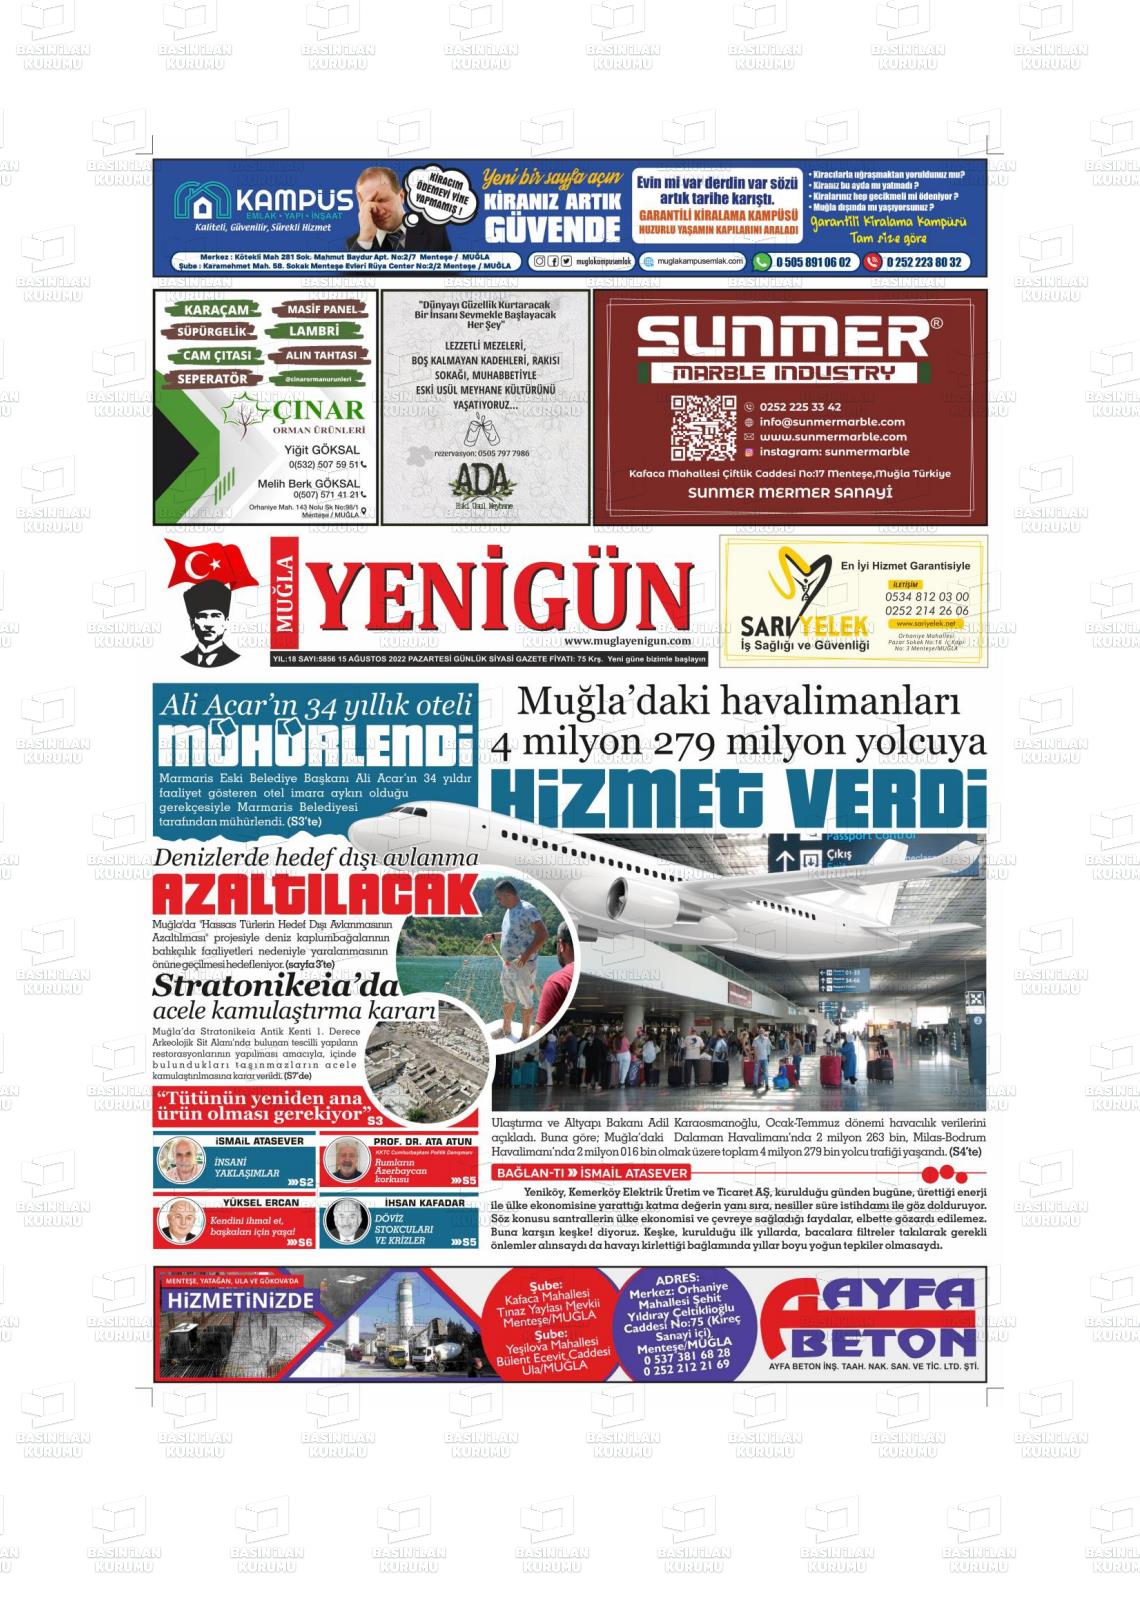 15 Ağustos 2022 Muğla Yenigün Gazete Manşeti